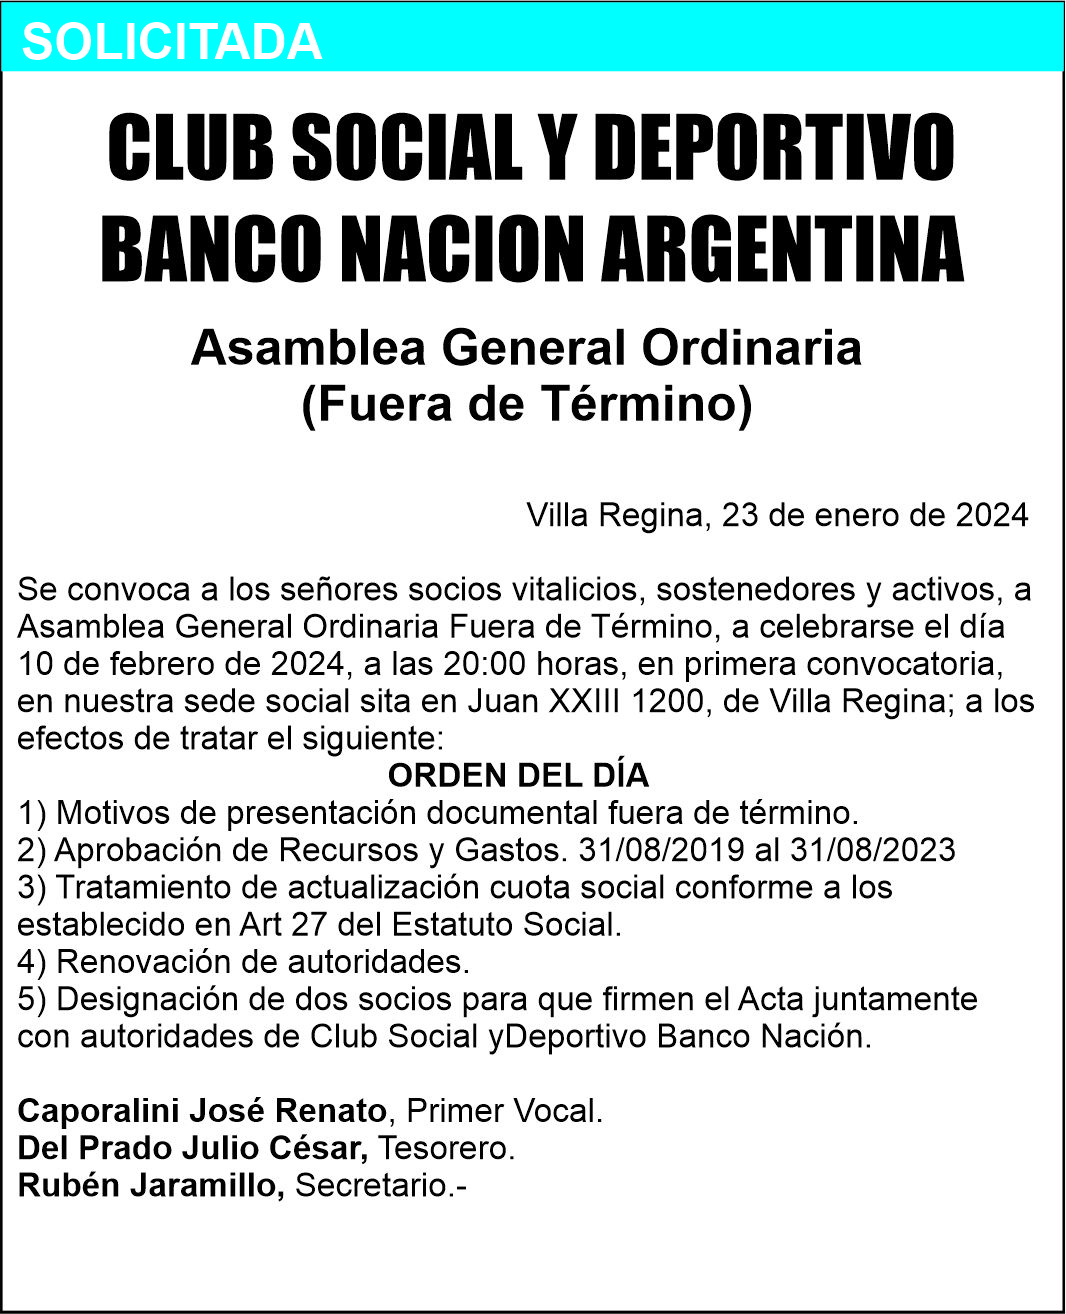 El Club Banco Nación convoca a socios a la Asamblea General Ordinaria